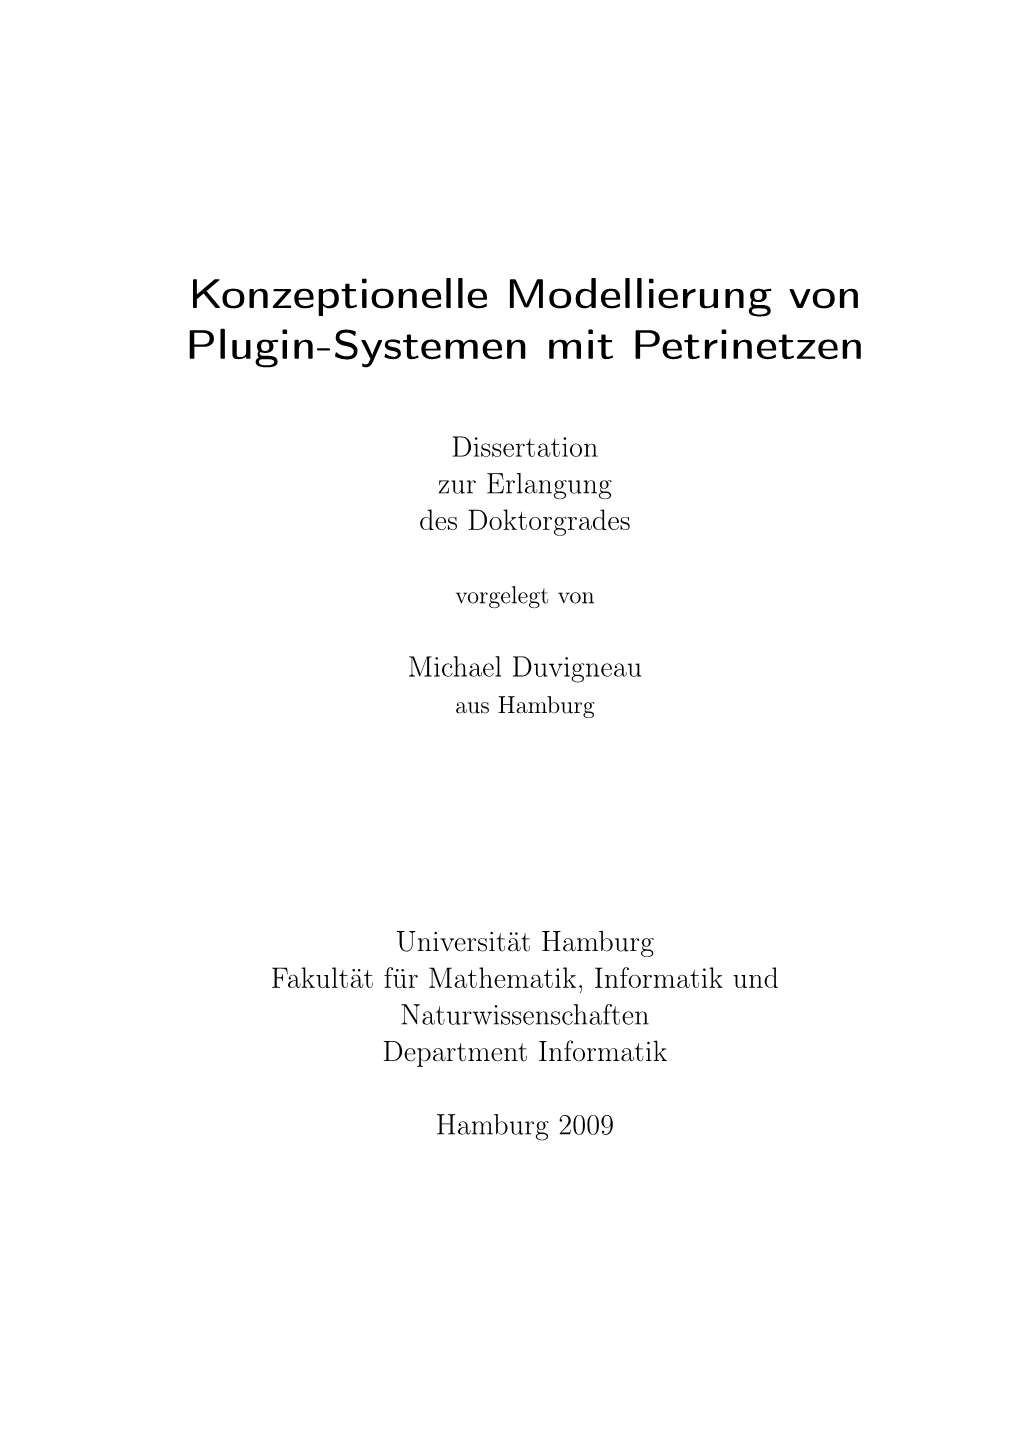 Konzeptionelle Modellierung Von Plugin-Systemen Mit Petrinetzen